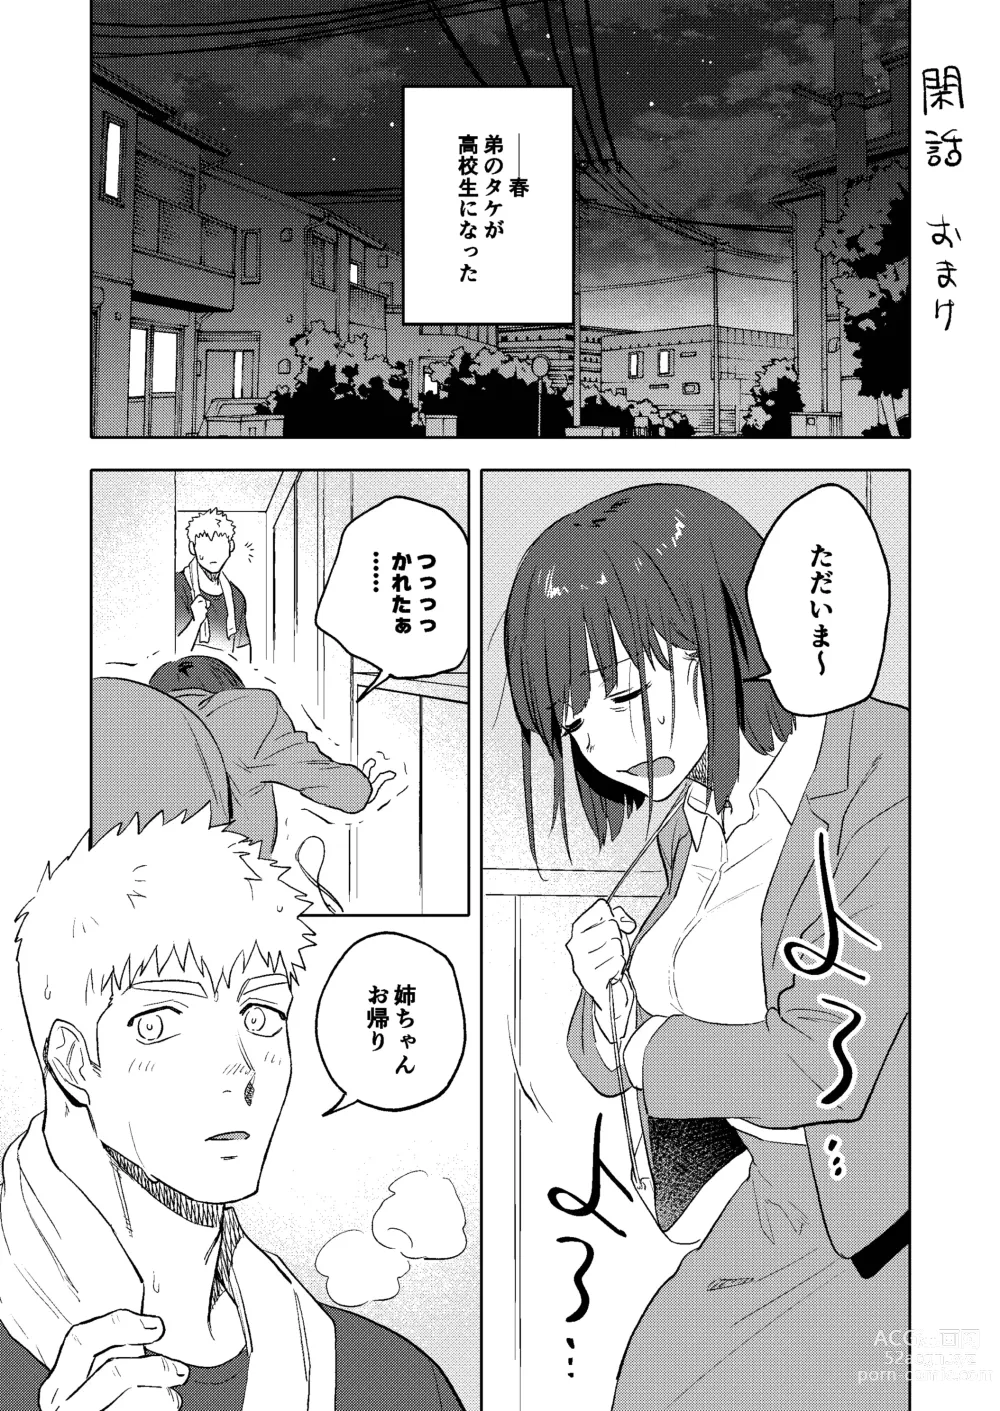 Page 46 of doujinshi Dainarishounari 2